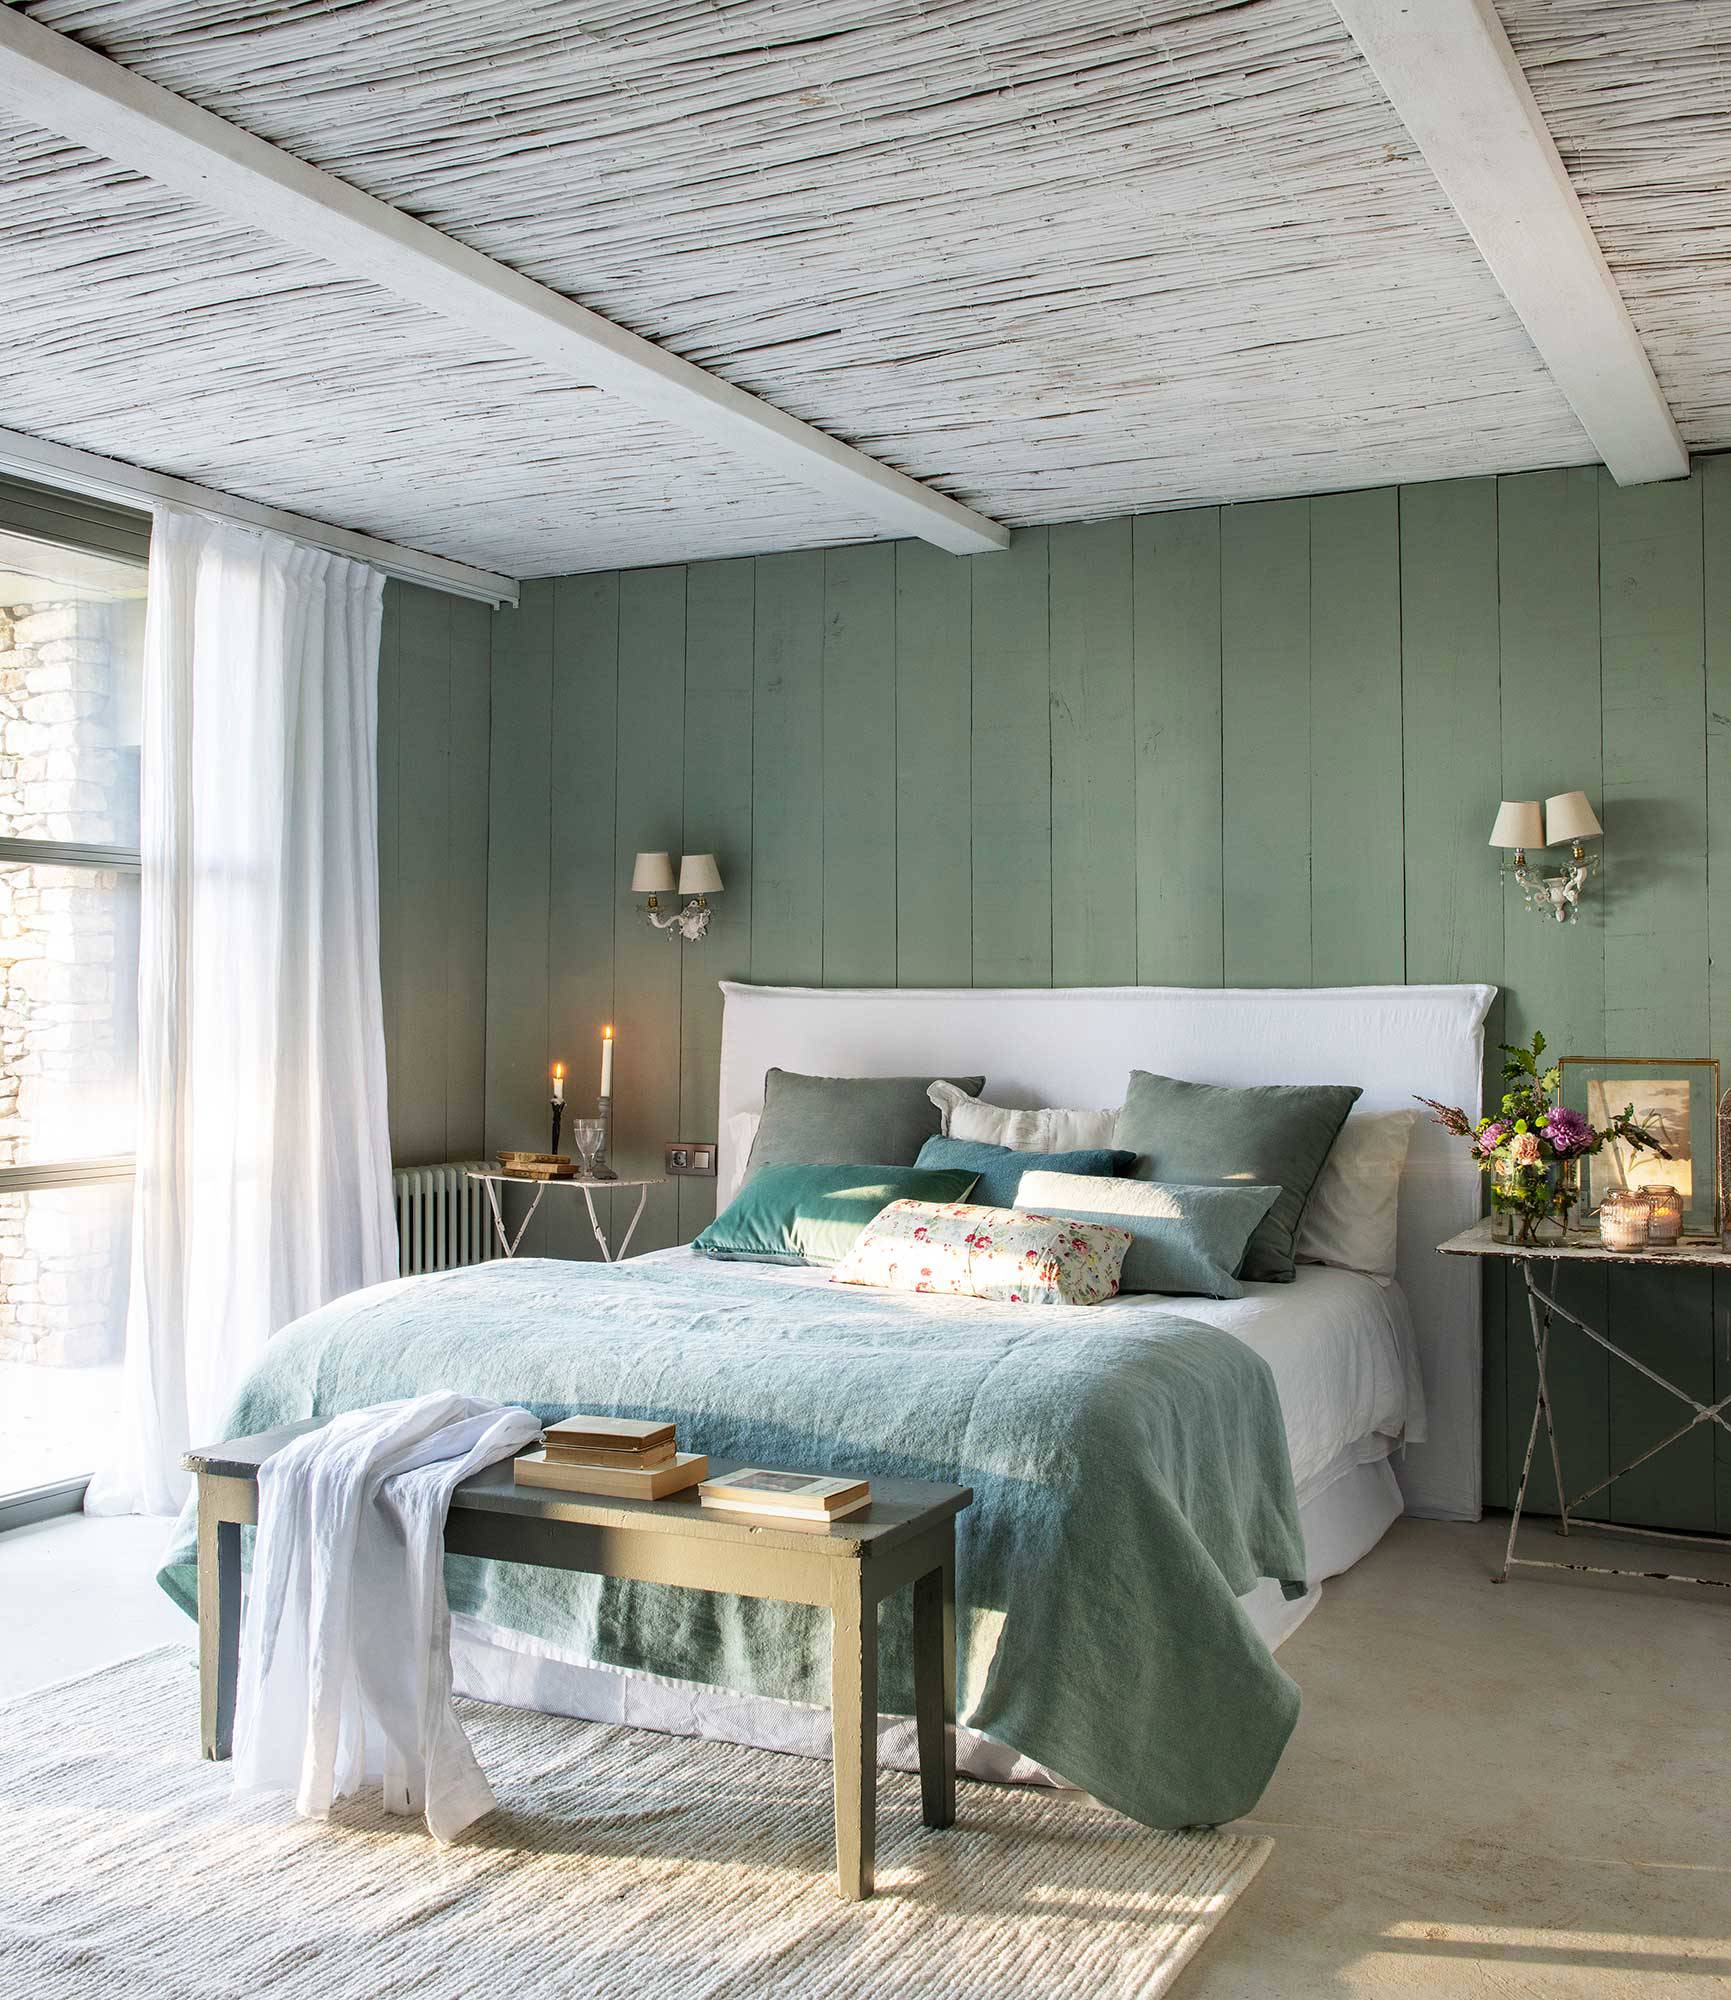 Dormitorio de campo con paredes verdes_00515305 O